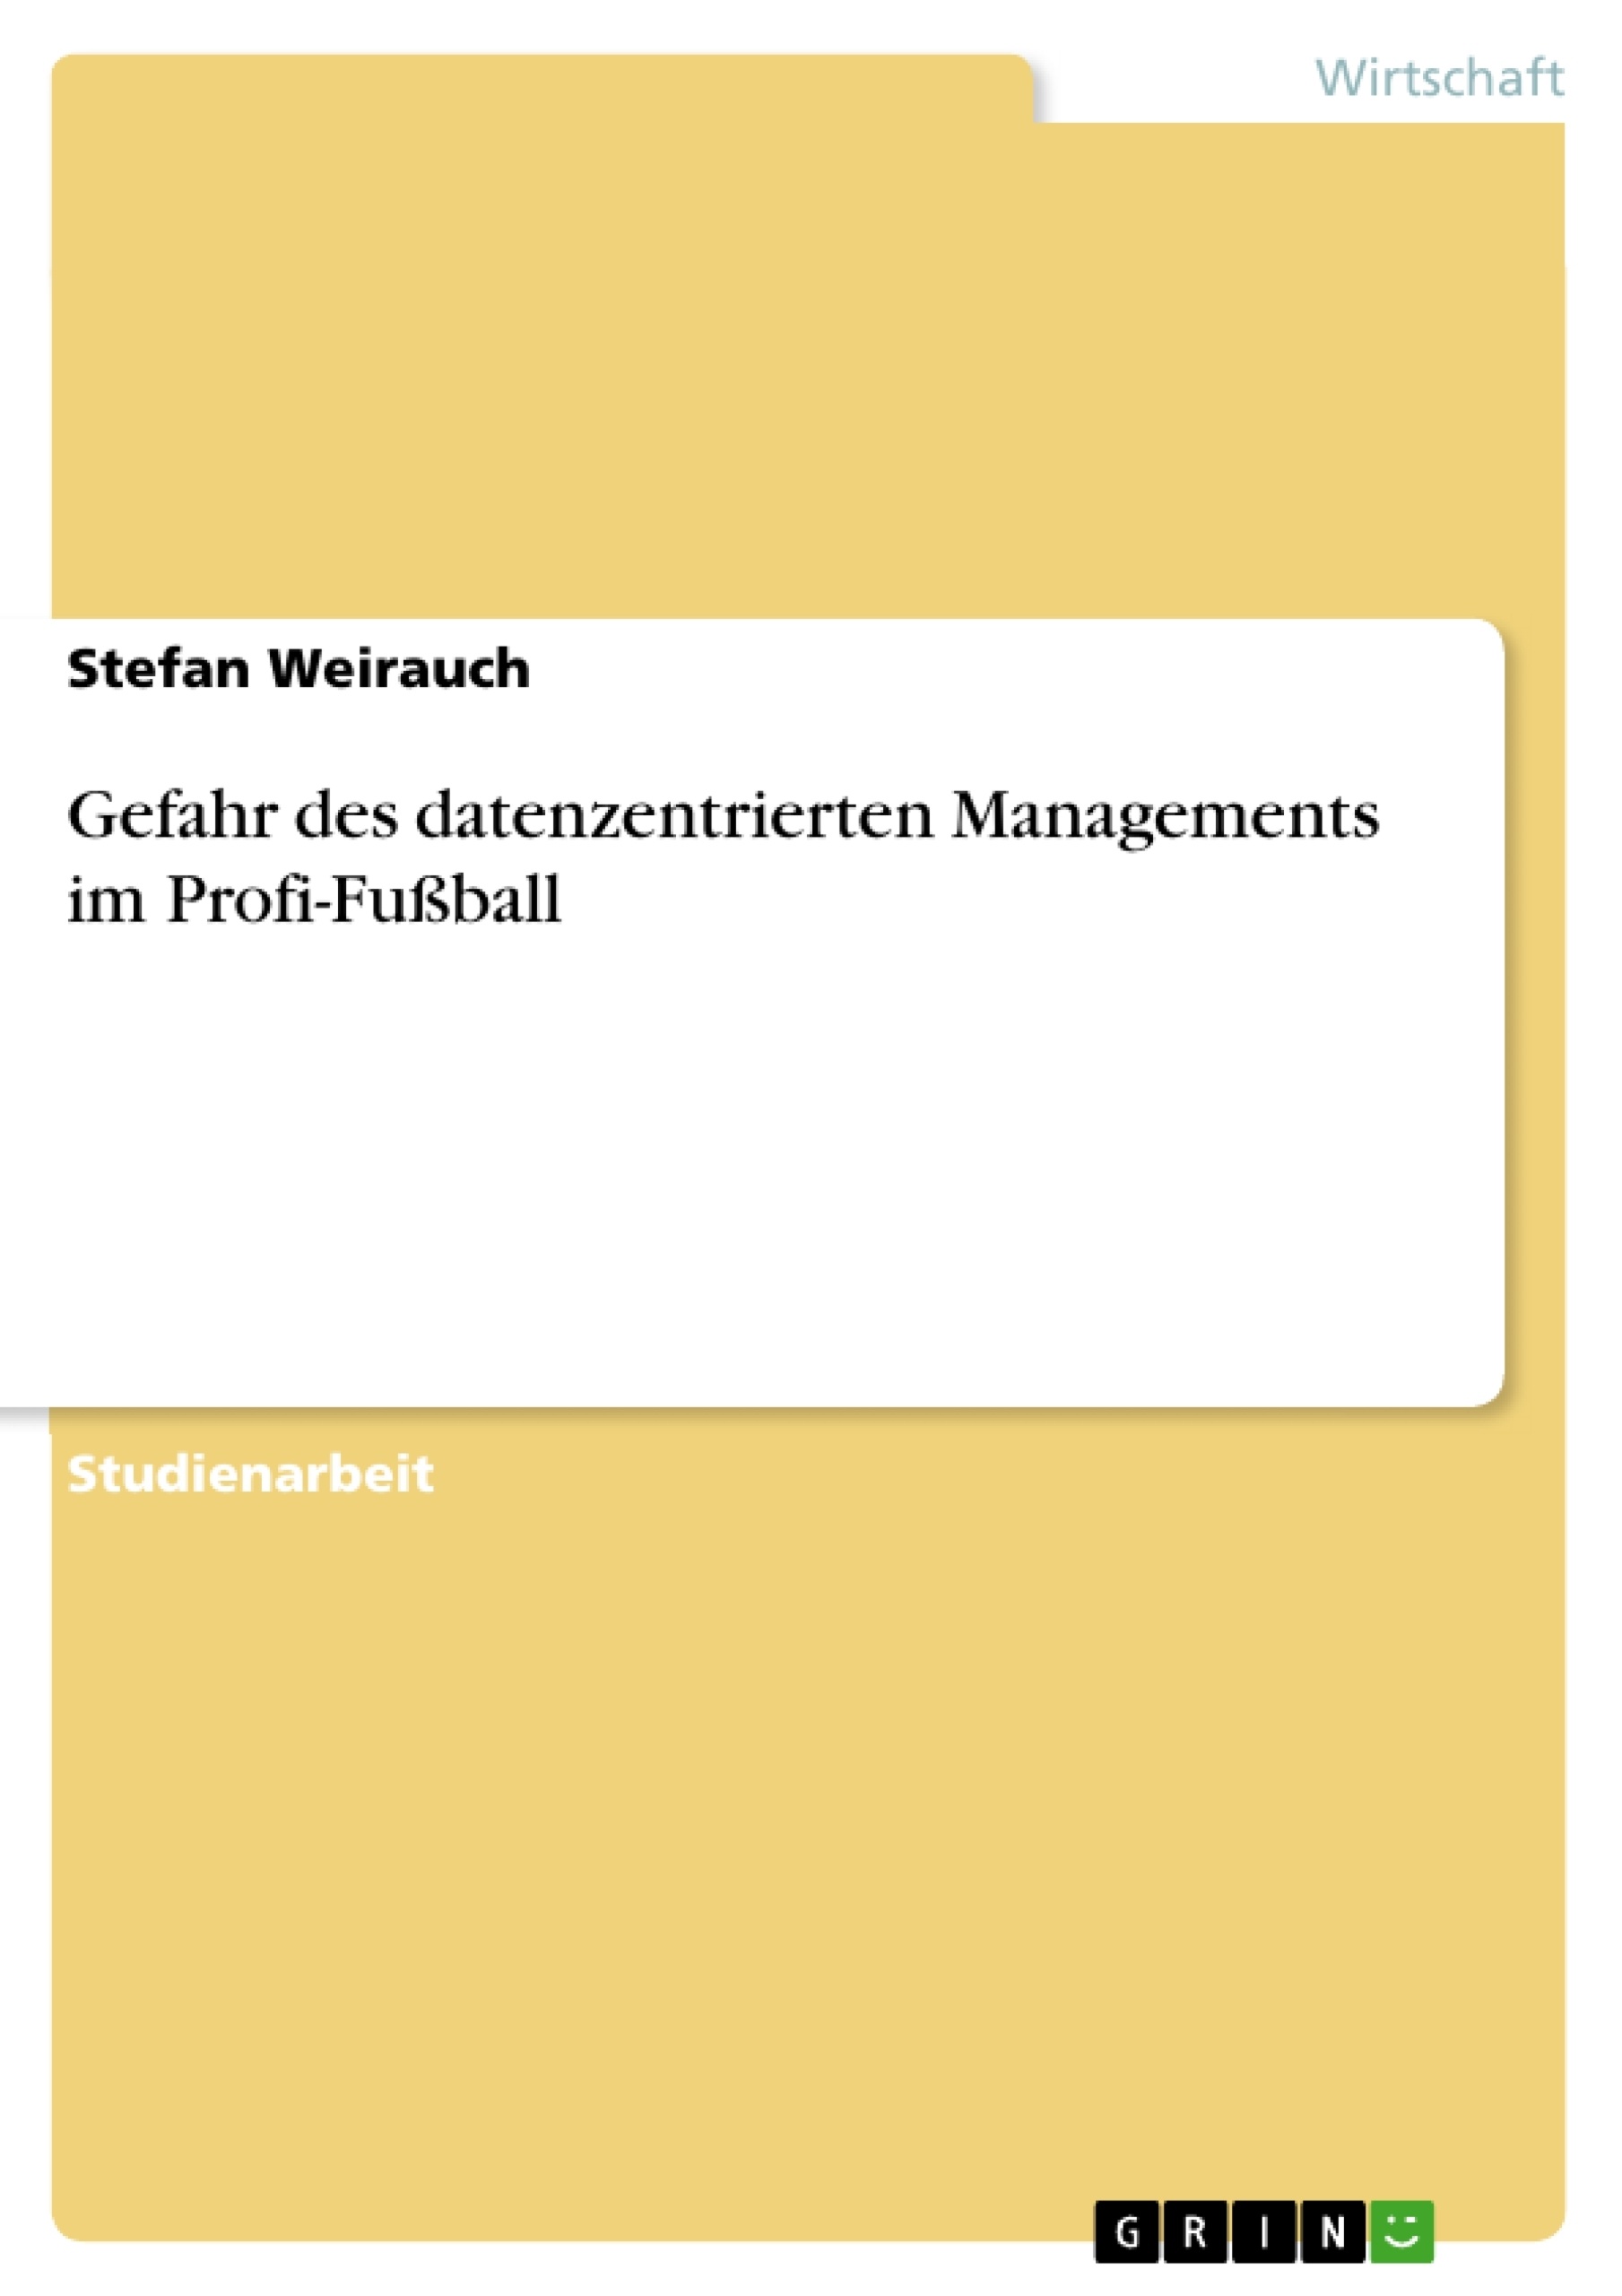 Título: Gefahr des datenzentrierten Managements im Profi-Fußball